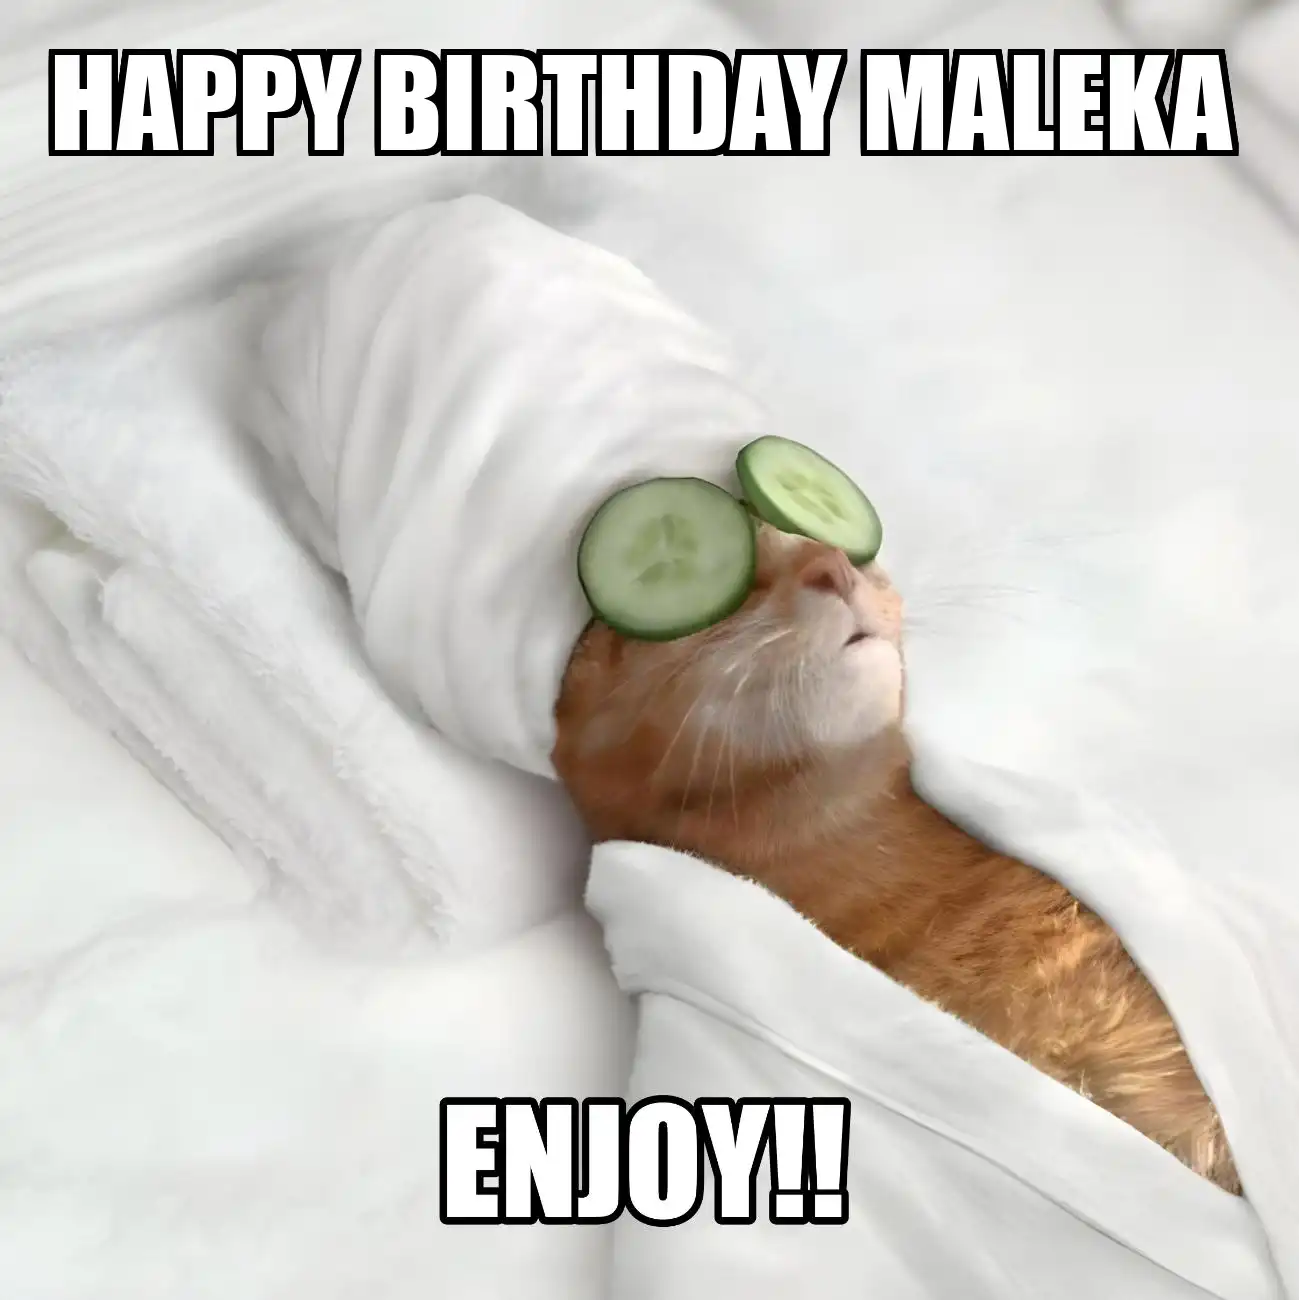 Happy Birthday Maleka Enjoy Cat Meme